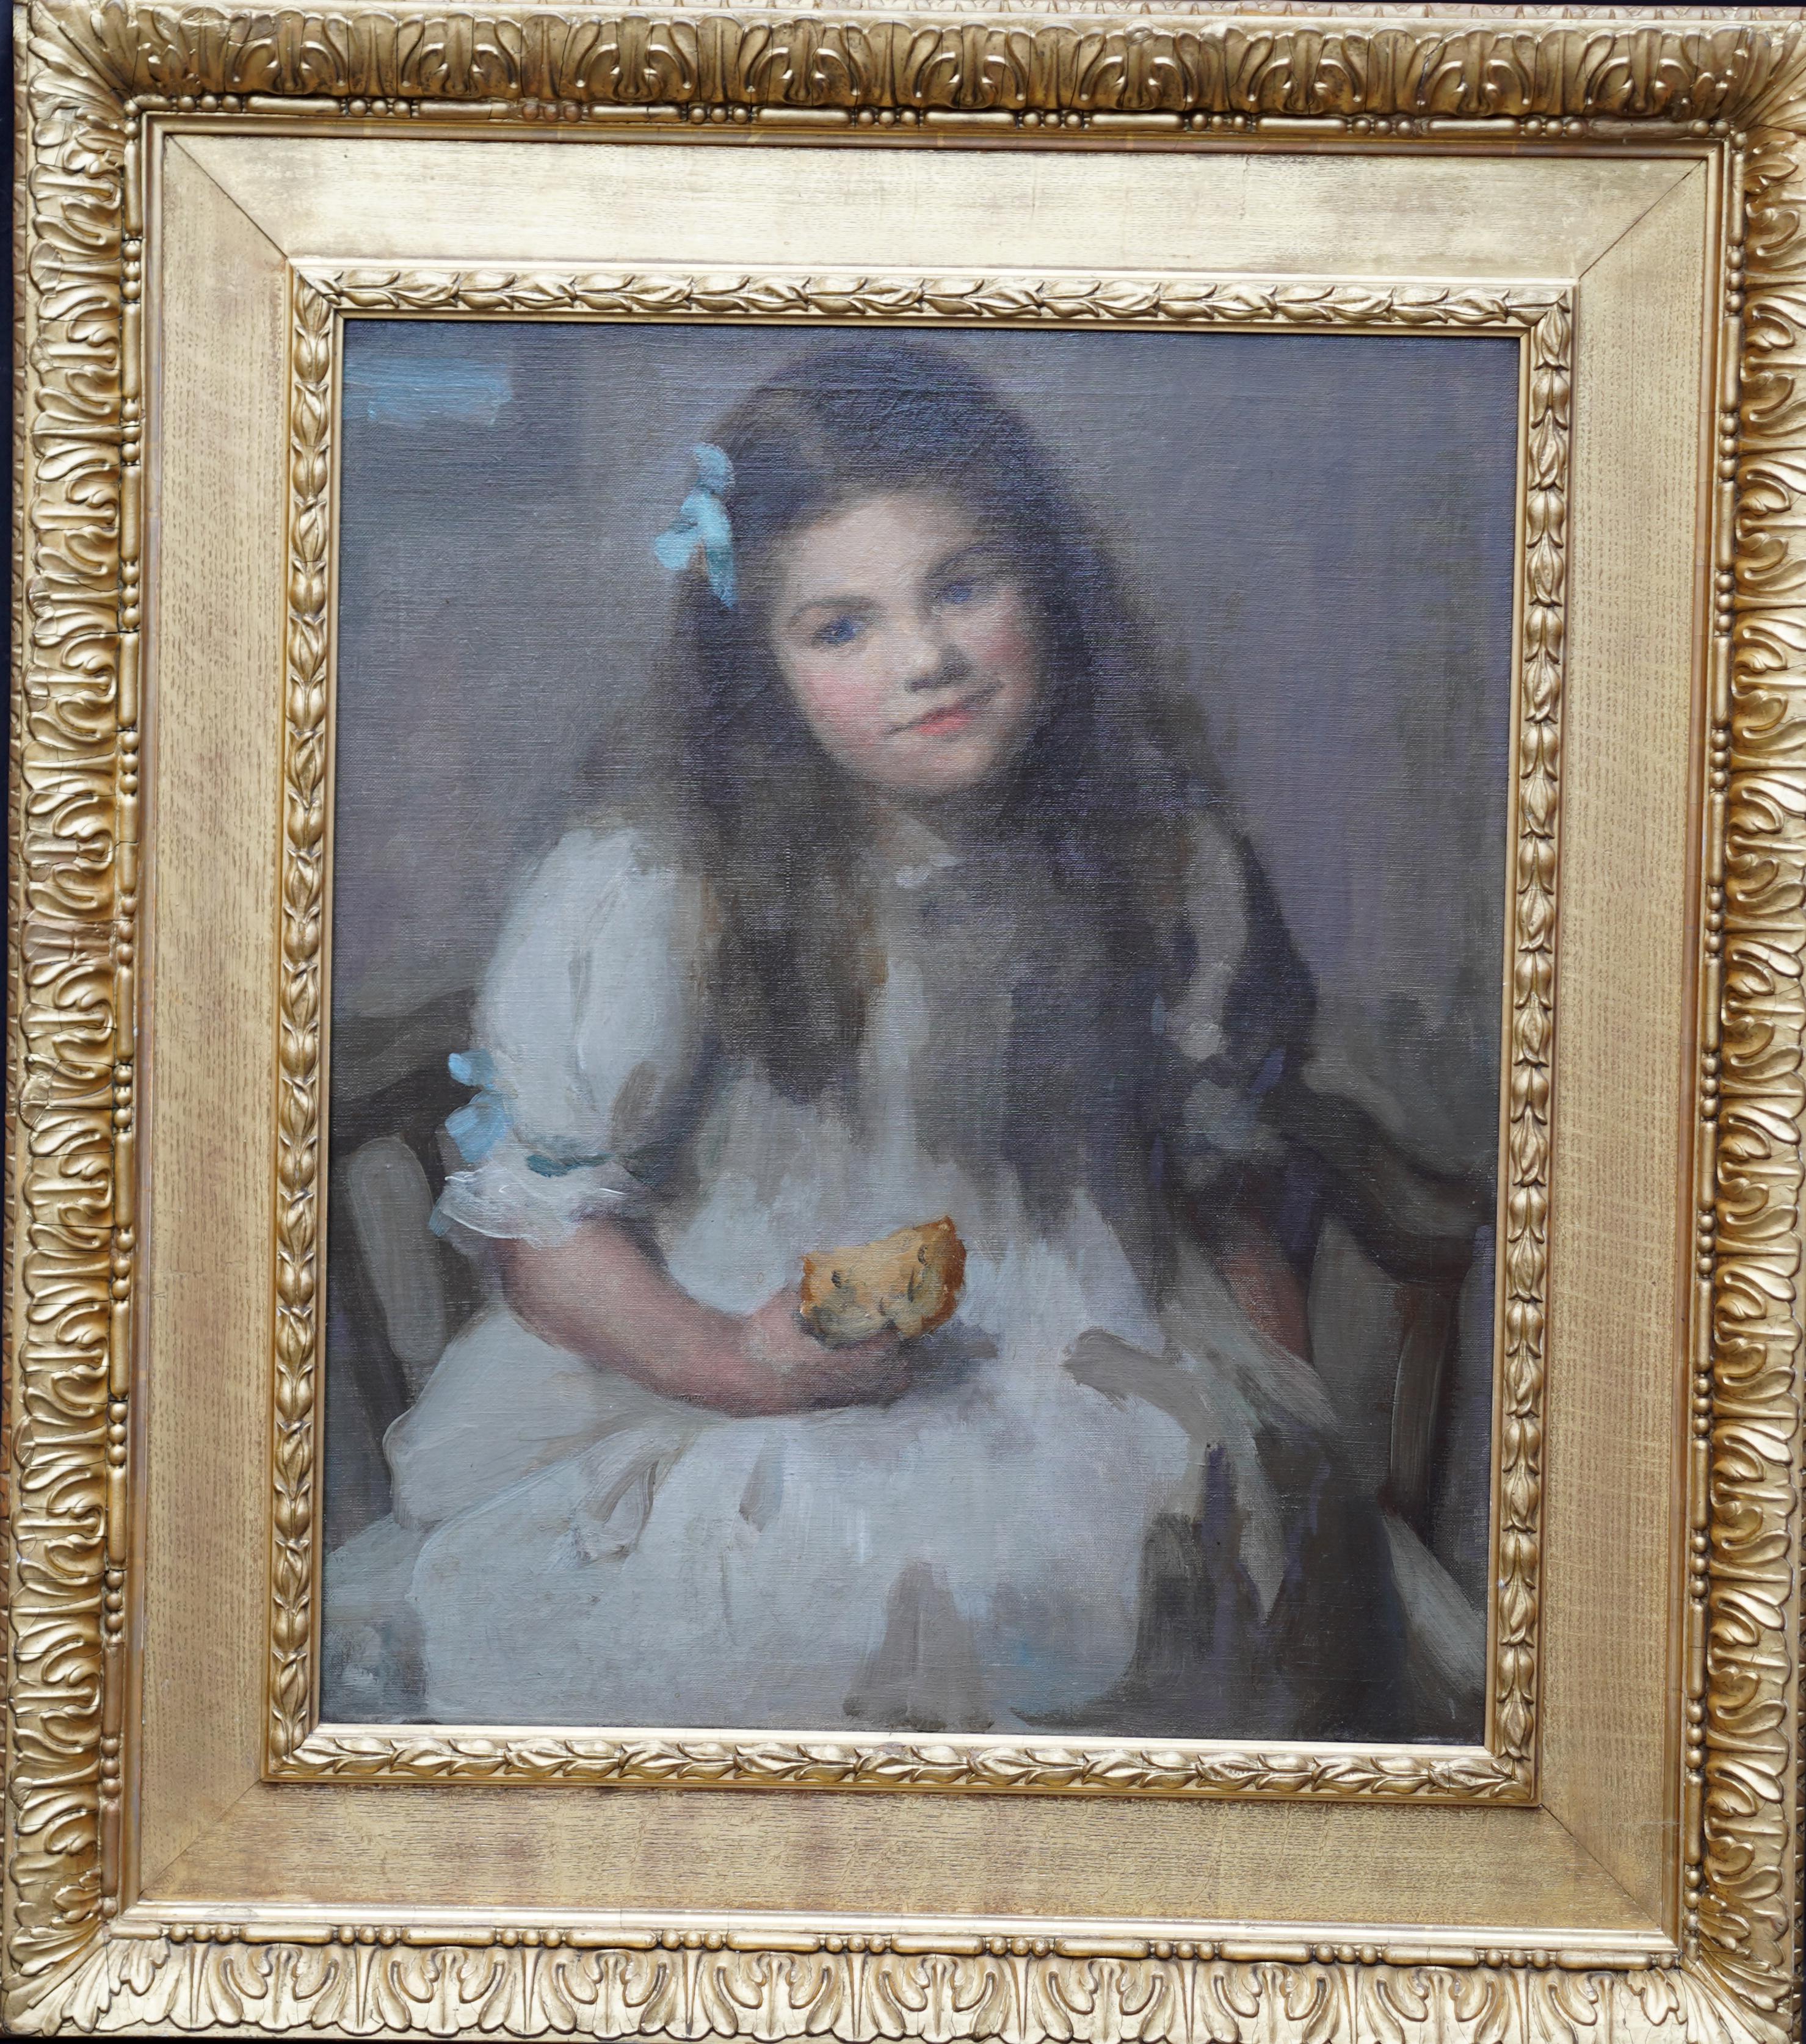 Portrait Painting Sybil Maude - Portrait d'une jeune fille de Cornouailles  - Art britannique 1905 - Peinture à l'huile - Artiste féminine